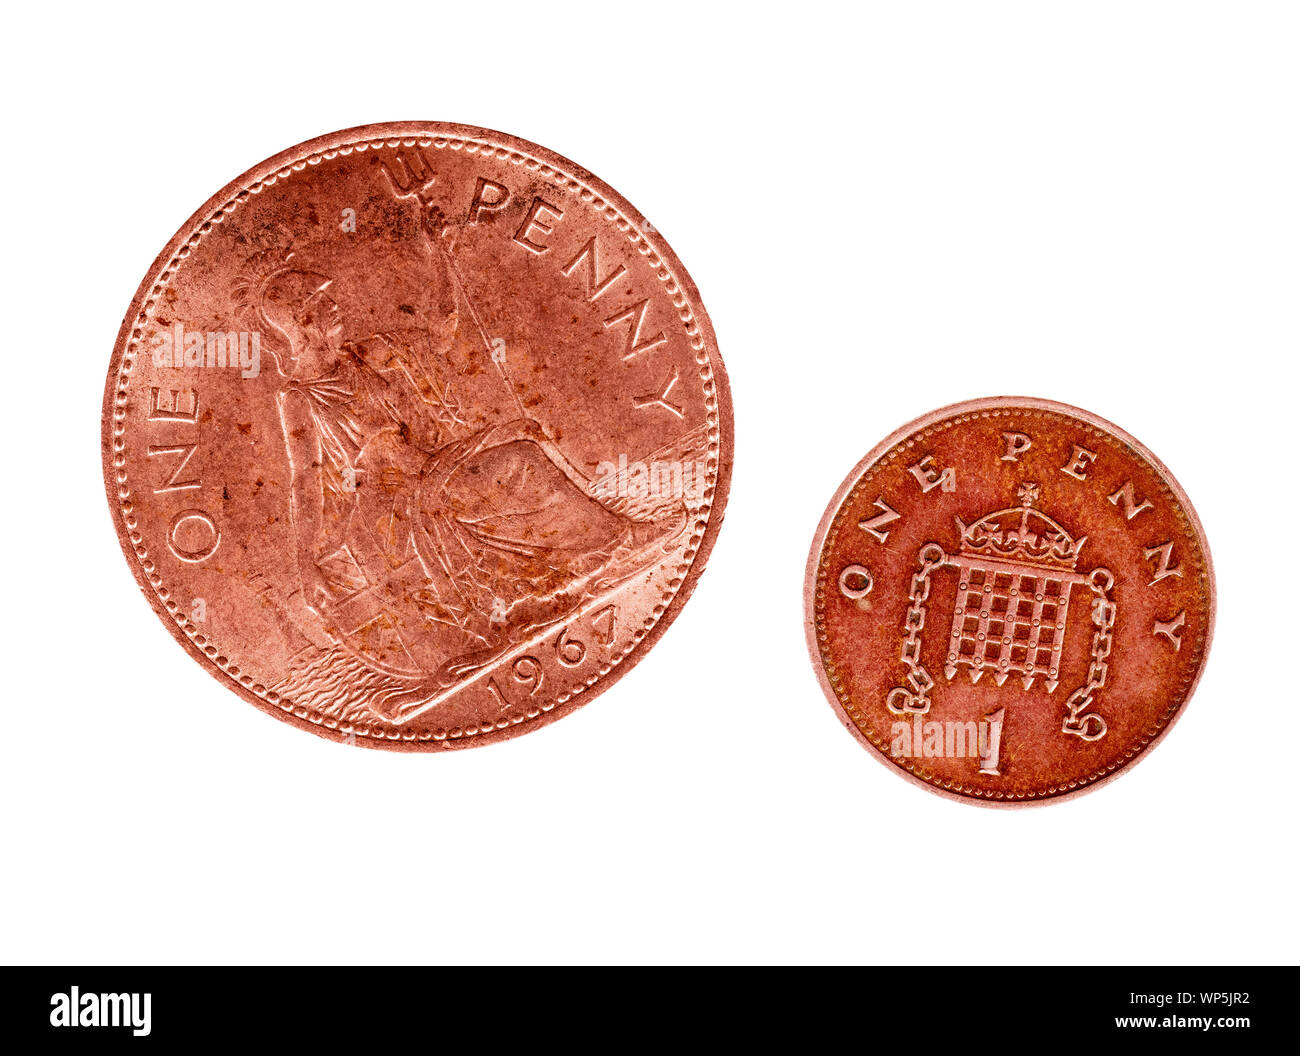 À partir de la Rule Britannia à la défense une herse objet. UK old and new penny de monnaie. Isolé sur fond blanc. Concept, peut-être la métaphore. Banque D'Images